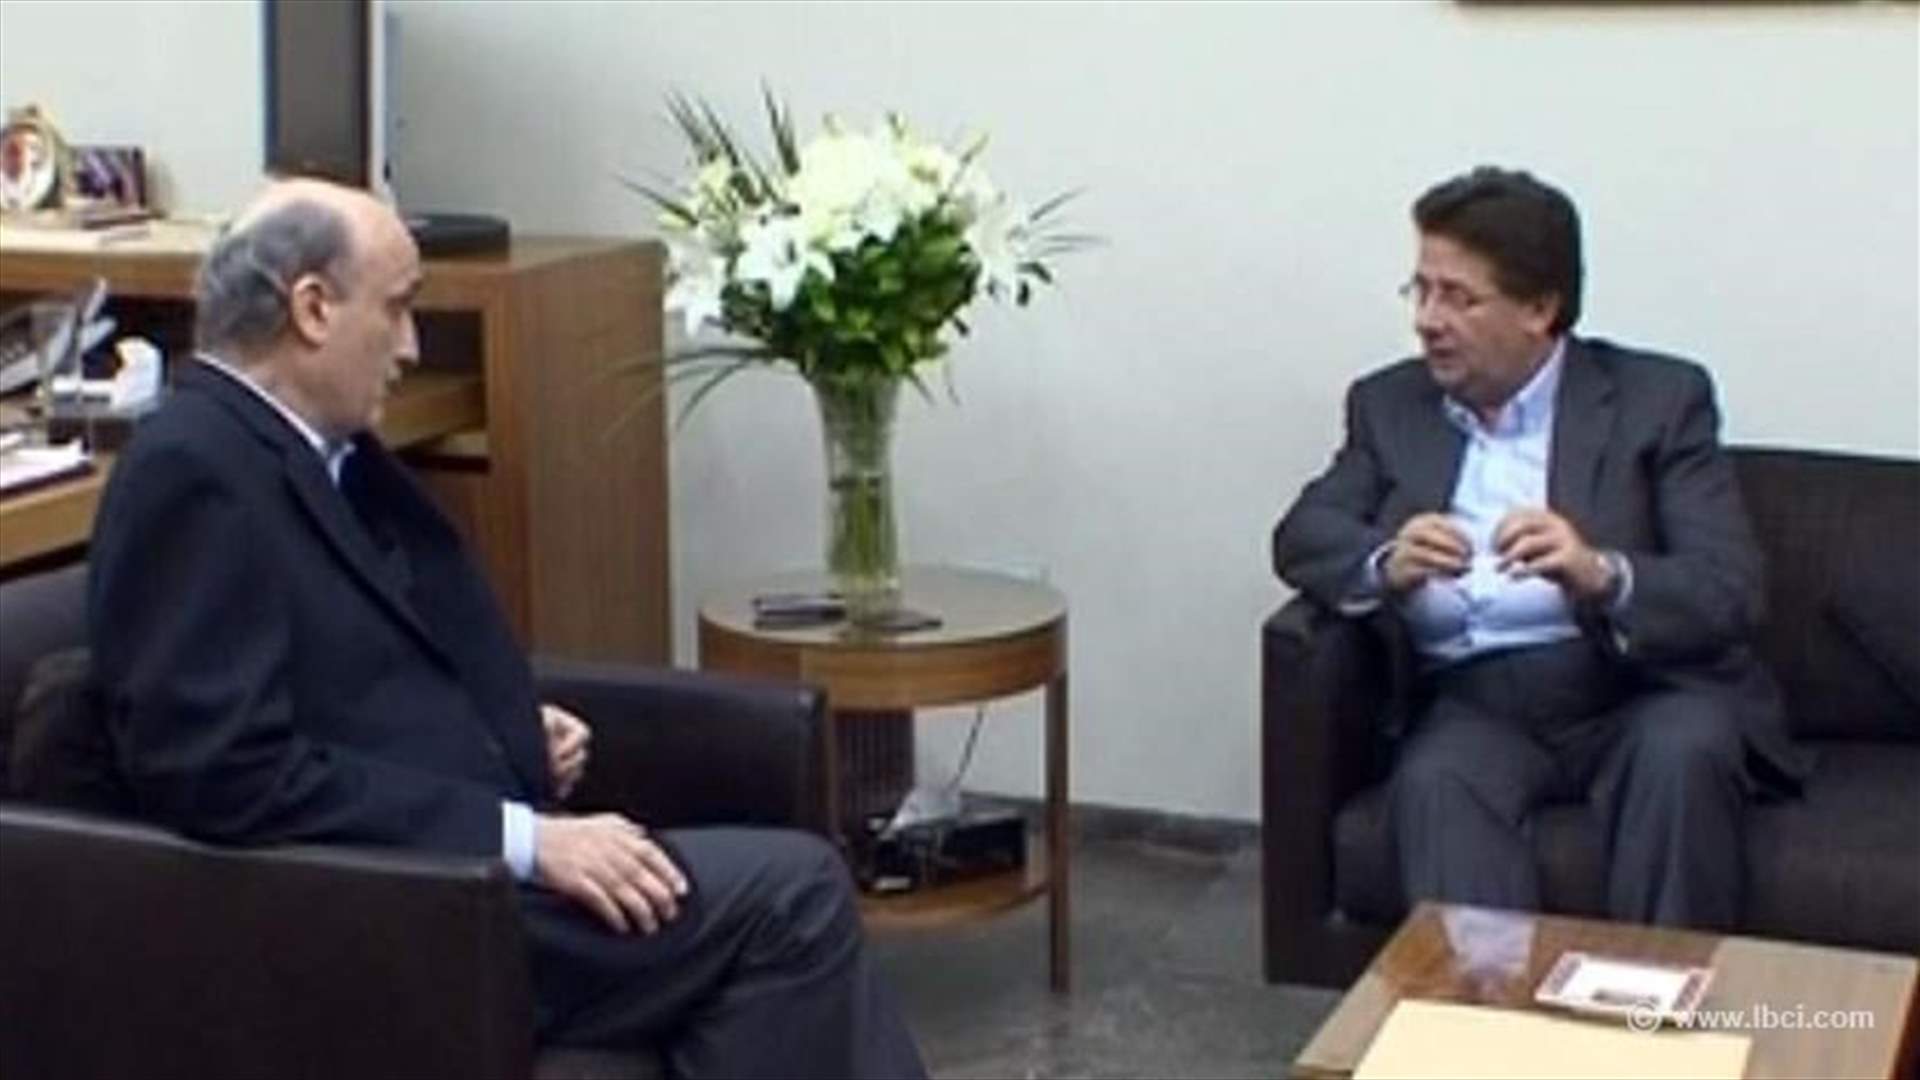 LF’s Geagea meets with MP Kanaan in Maarab 